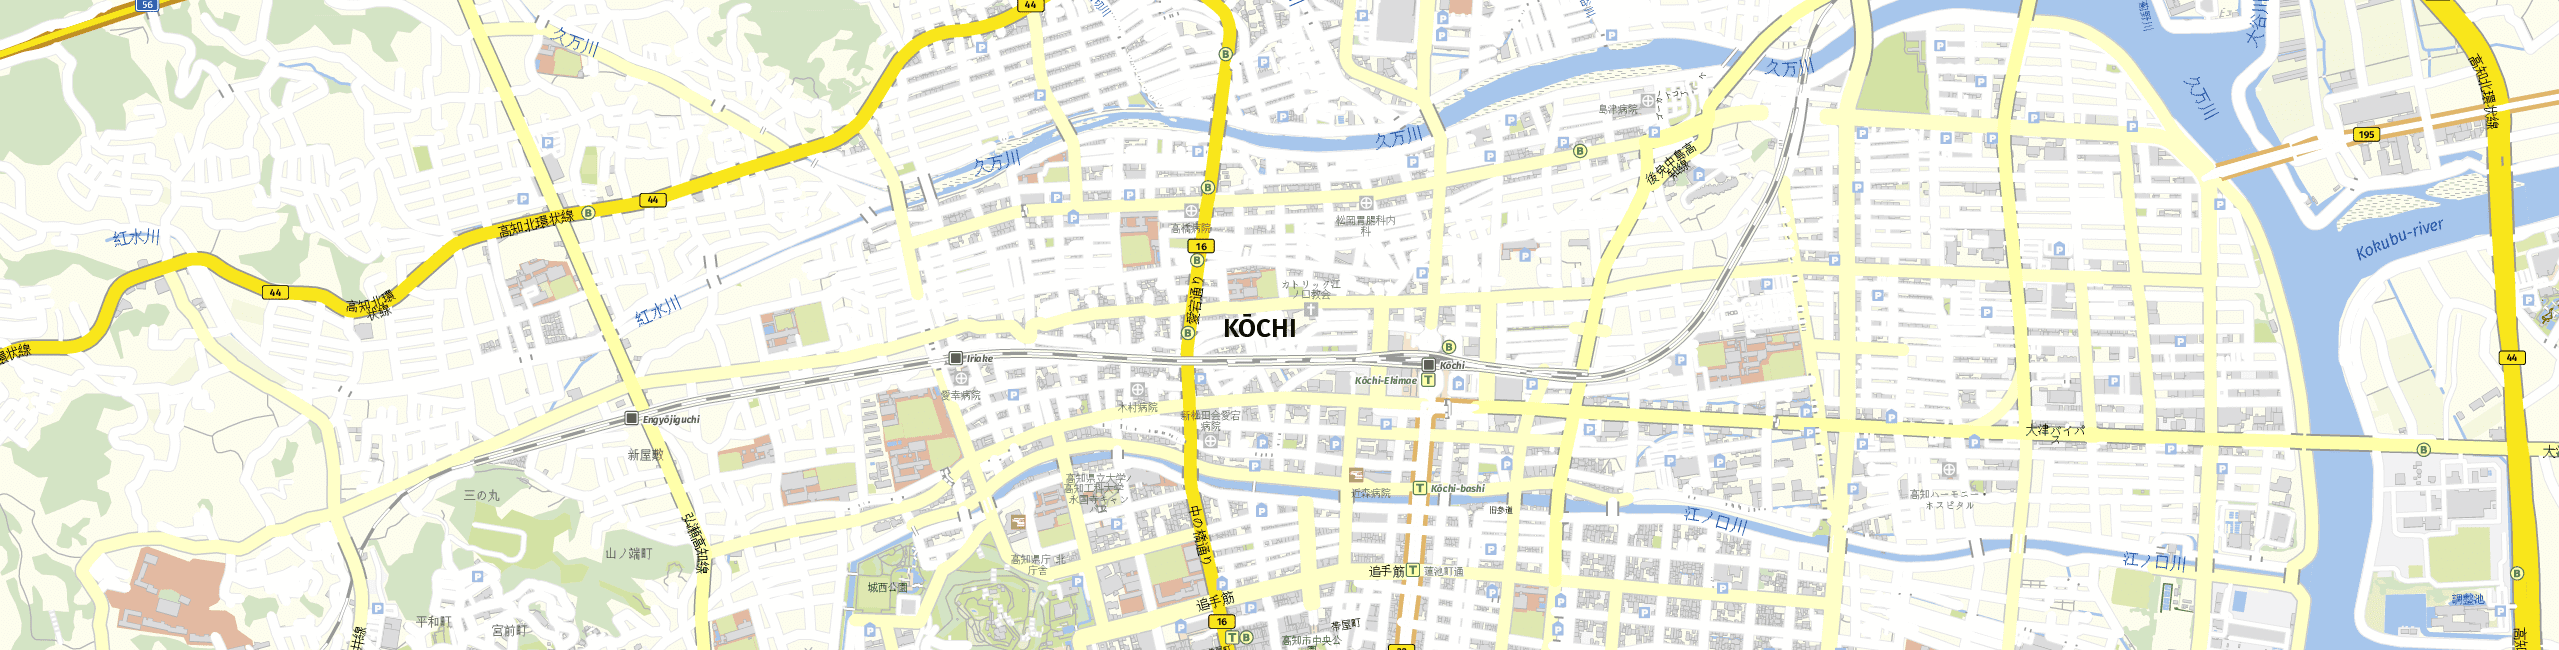 Stadtplan Kochi zum Downloaden.